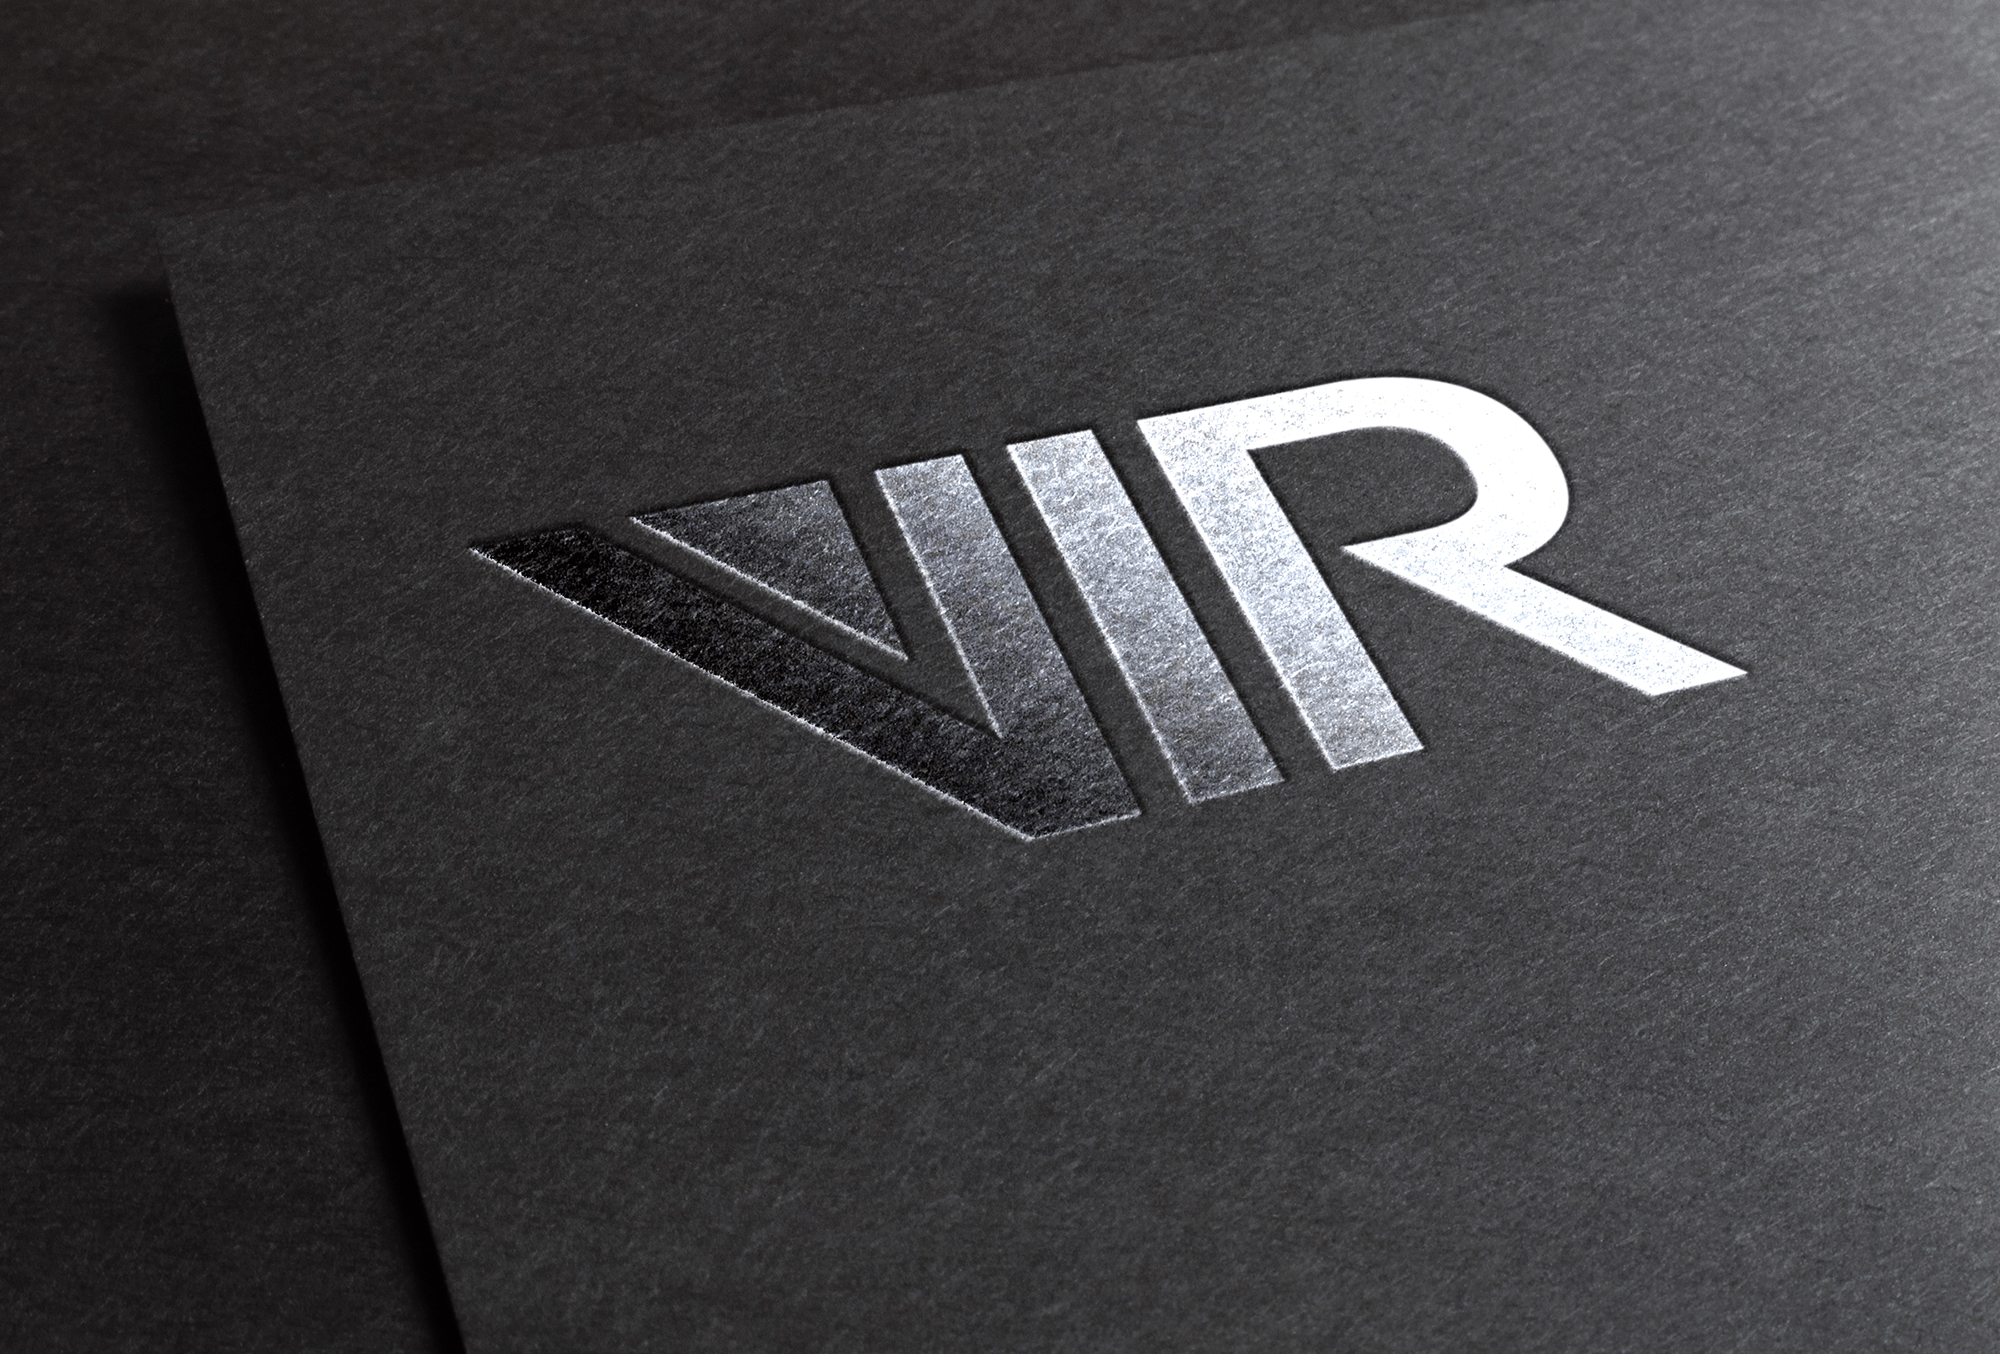 Vir Logo - VIR Biotech